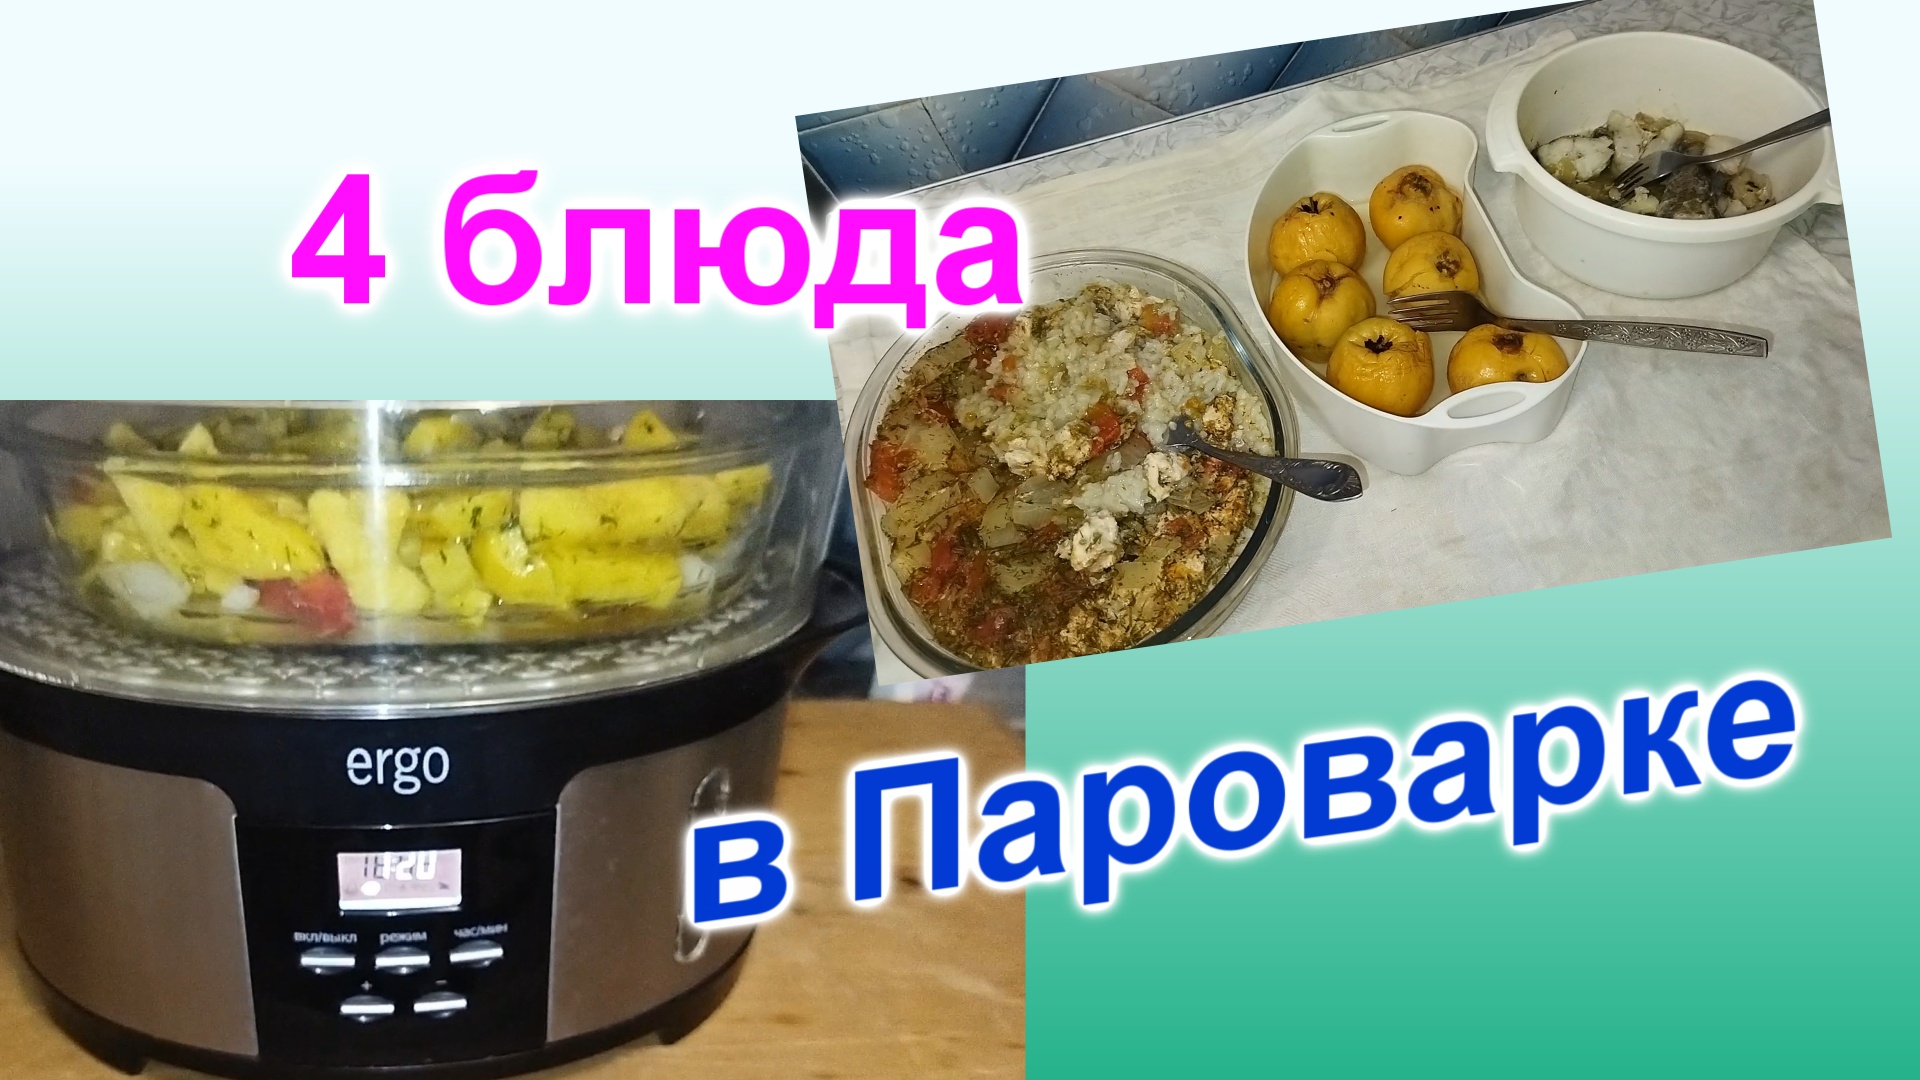 Как приготовить 4 блюда в пароварке на 3 дня (158)/Быстро и вкусно/Часть 2